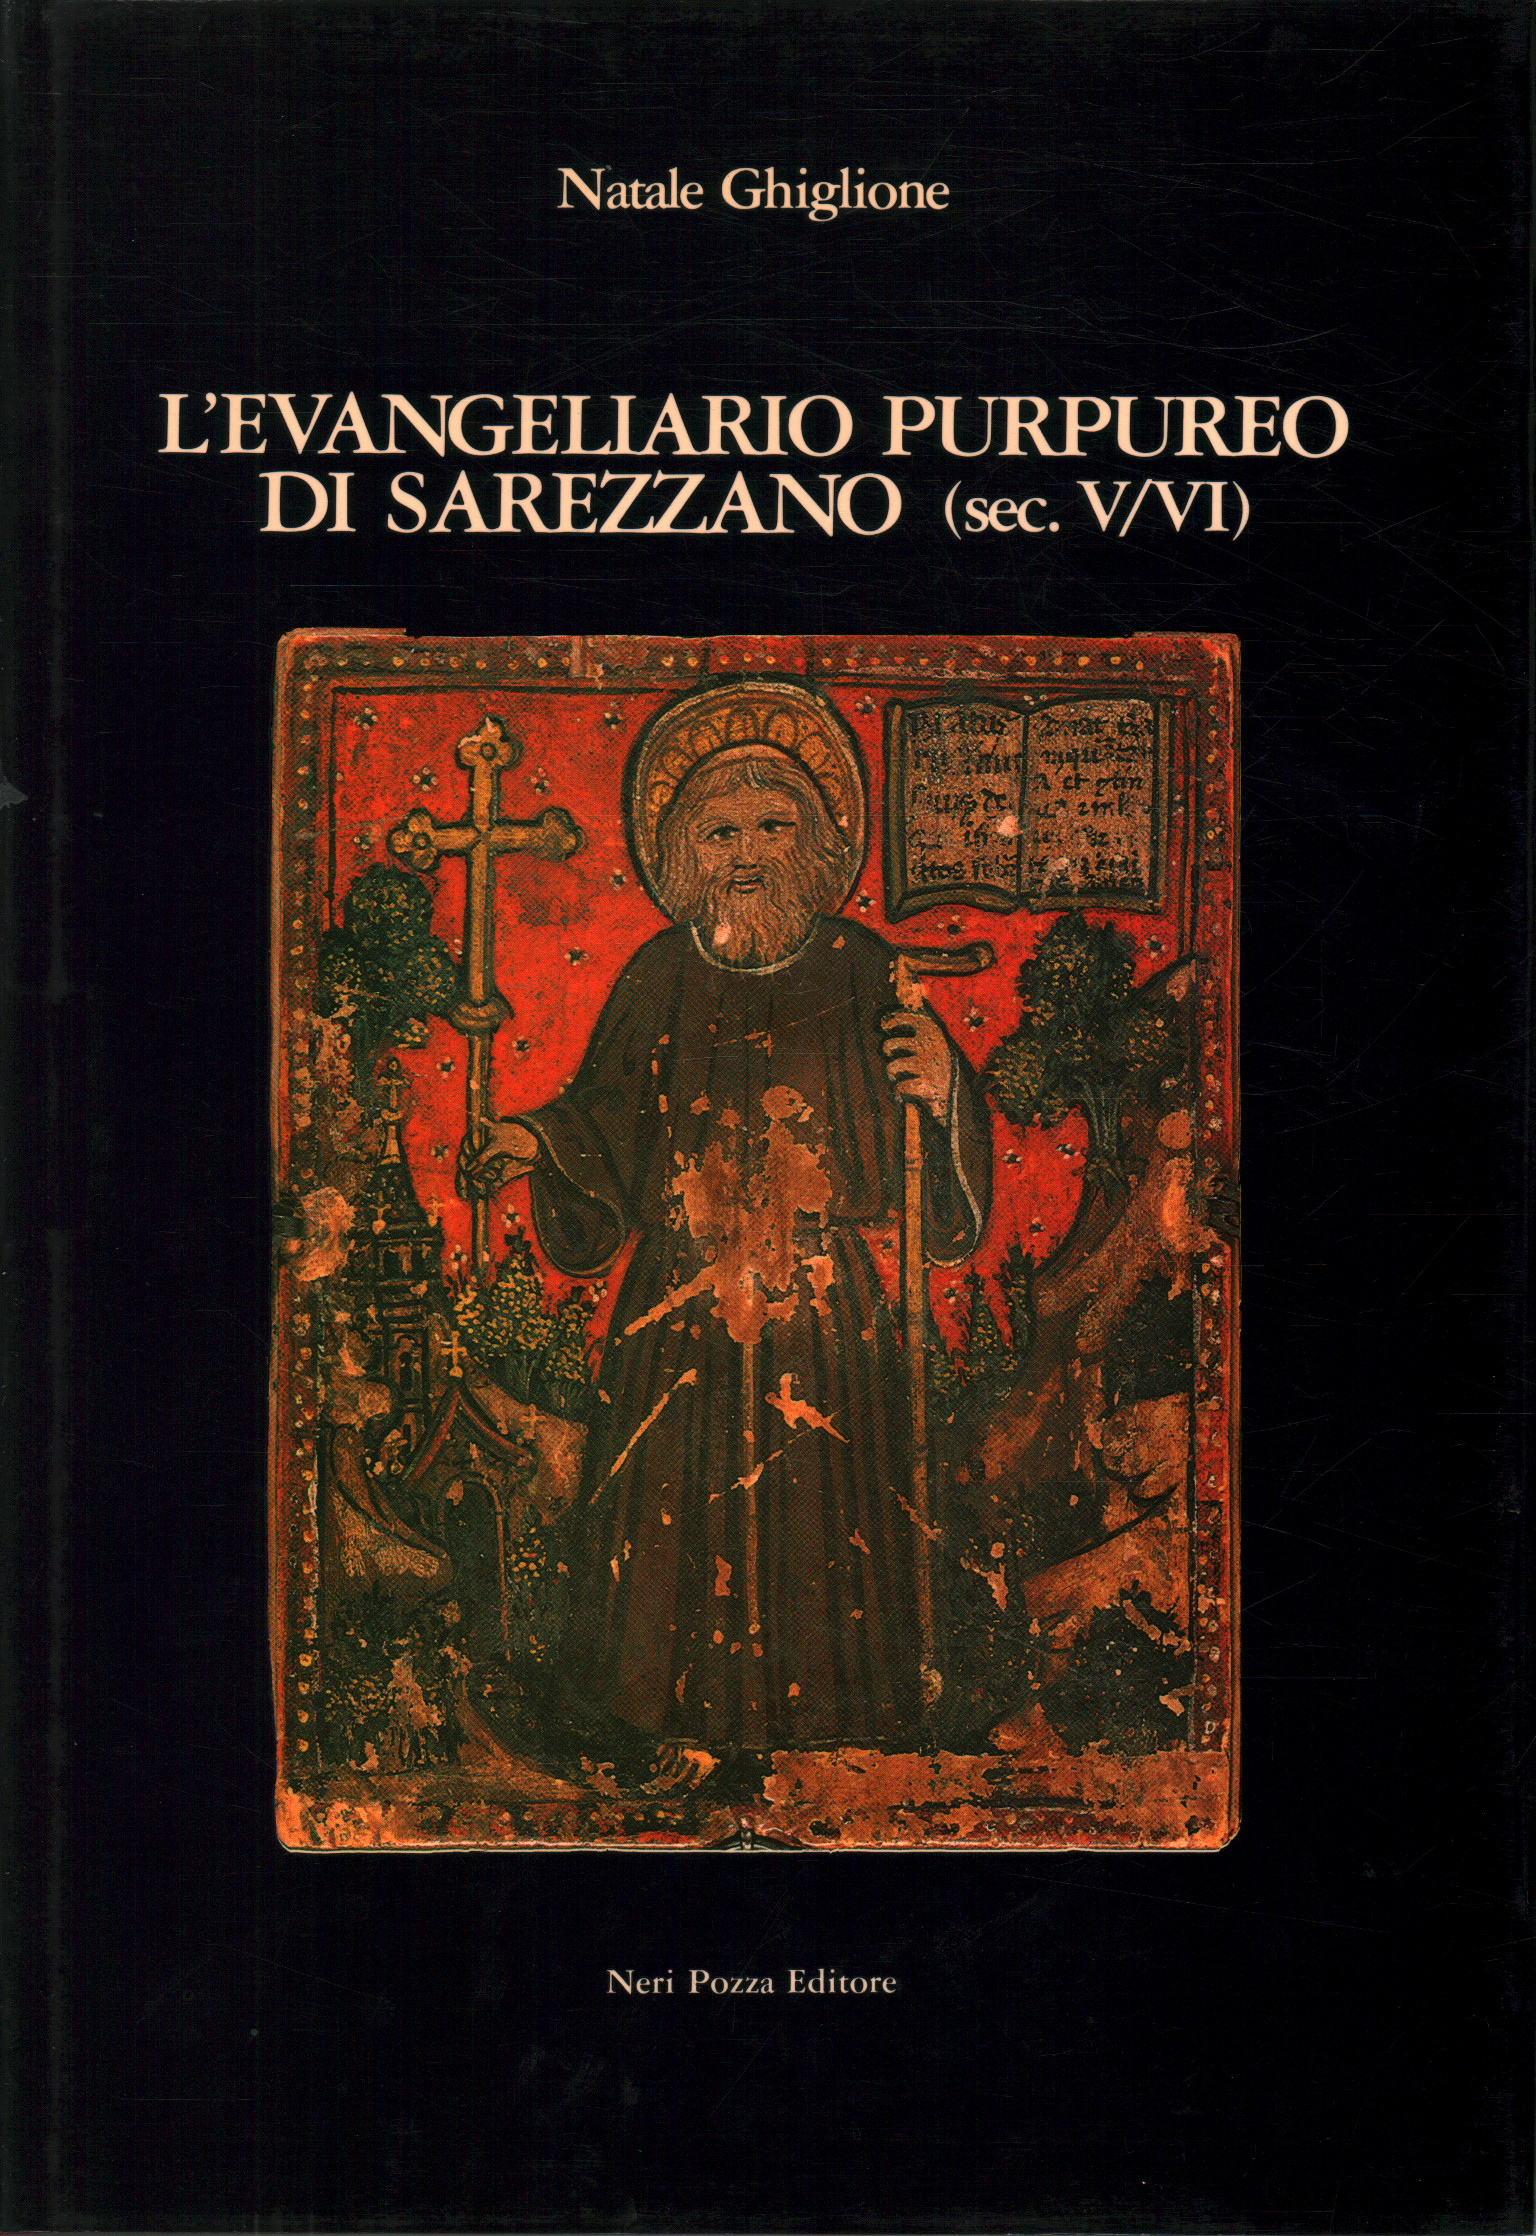 The purple gospel book of Sarezzano (5th/6th century), Natale Ghiglione